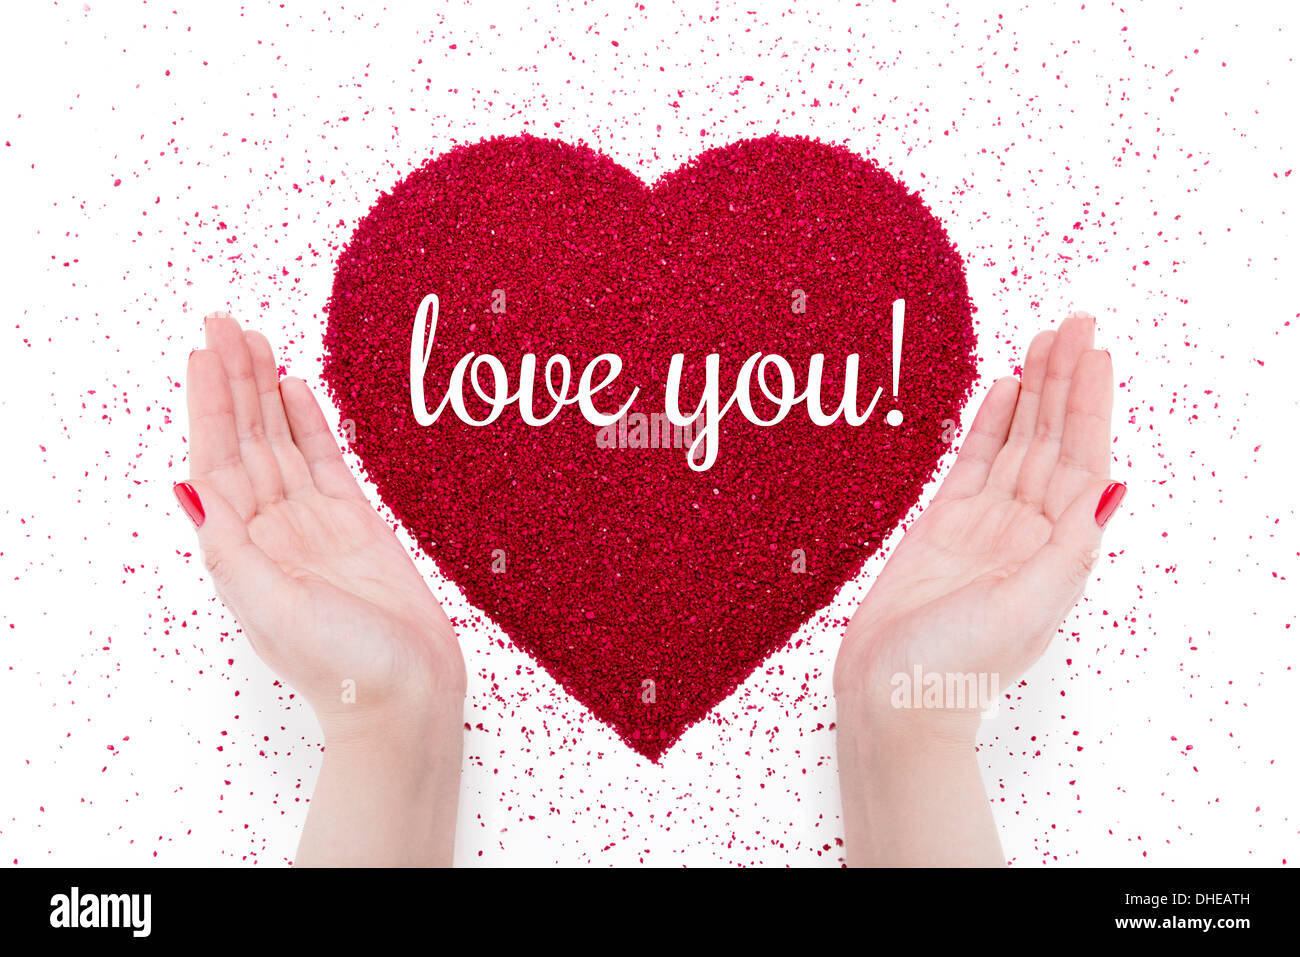 Auf das rote Herz der "Liebe Sand schriftliche dich" gemacht. Nähe befinden sich die Hände von Frauen mit roten Maniküre. Stockfoto